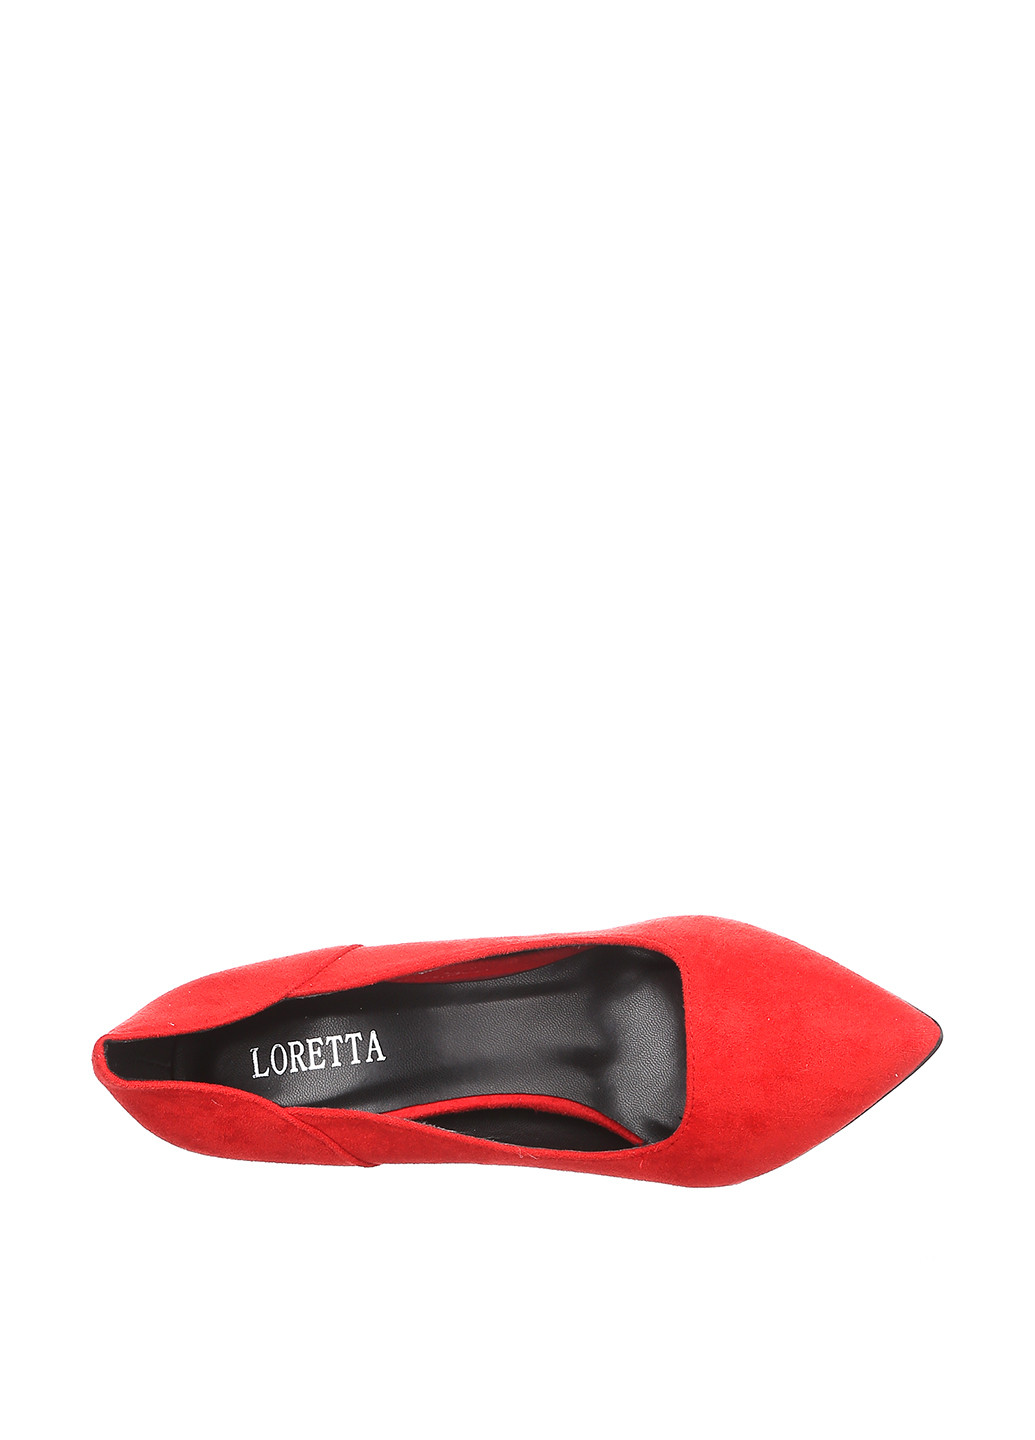 Туфлі Loretta туфлі-човники однотонні червоні кежуали